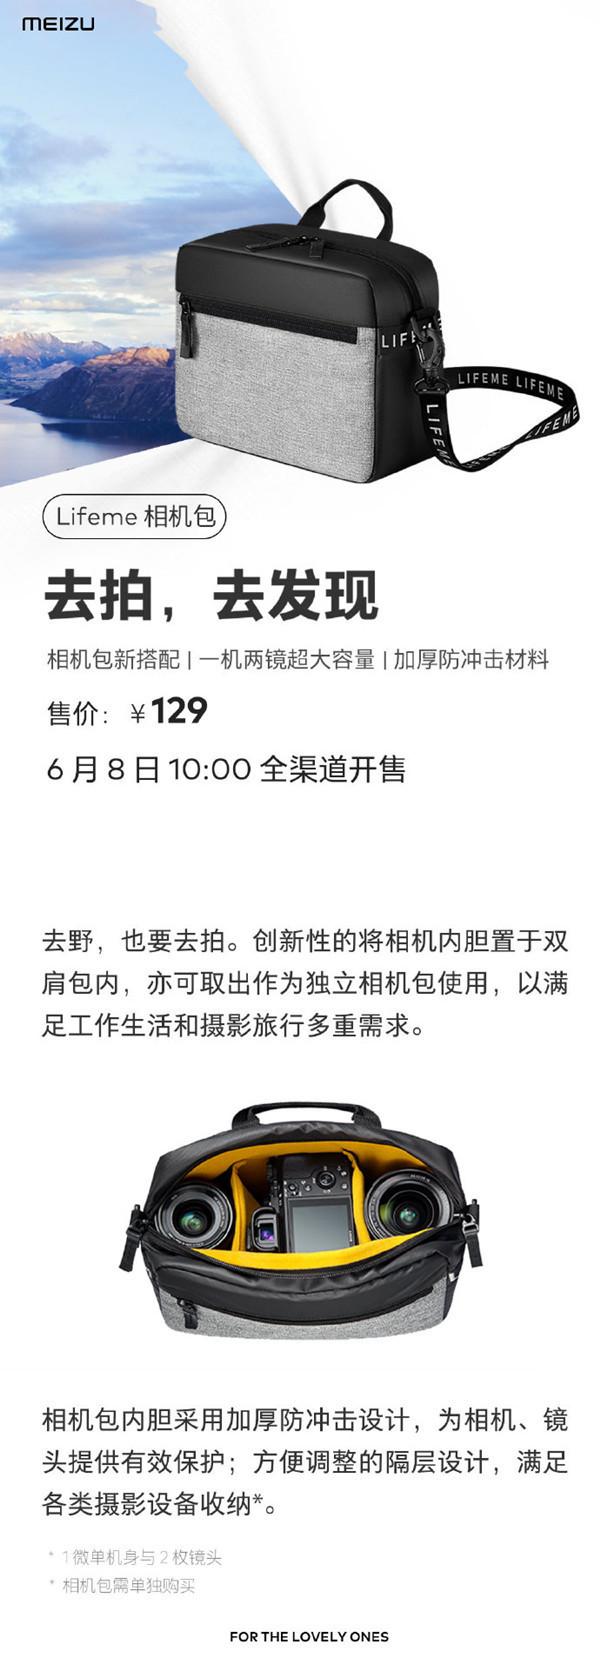 魅族Lifeme相机包上架 超大容量6月8日开售售129元！